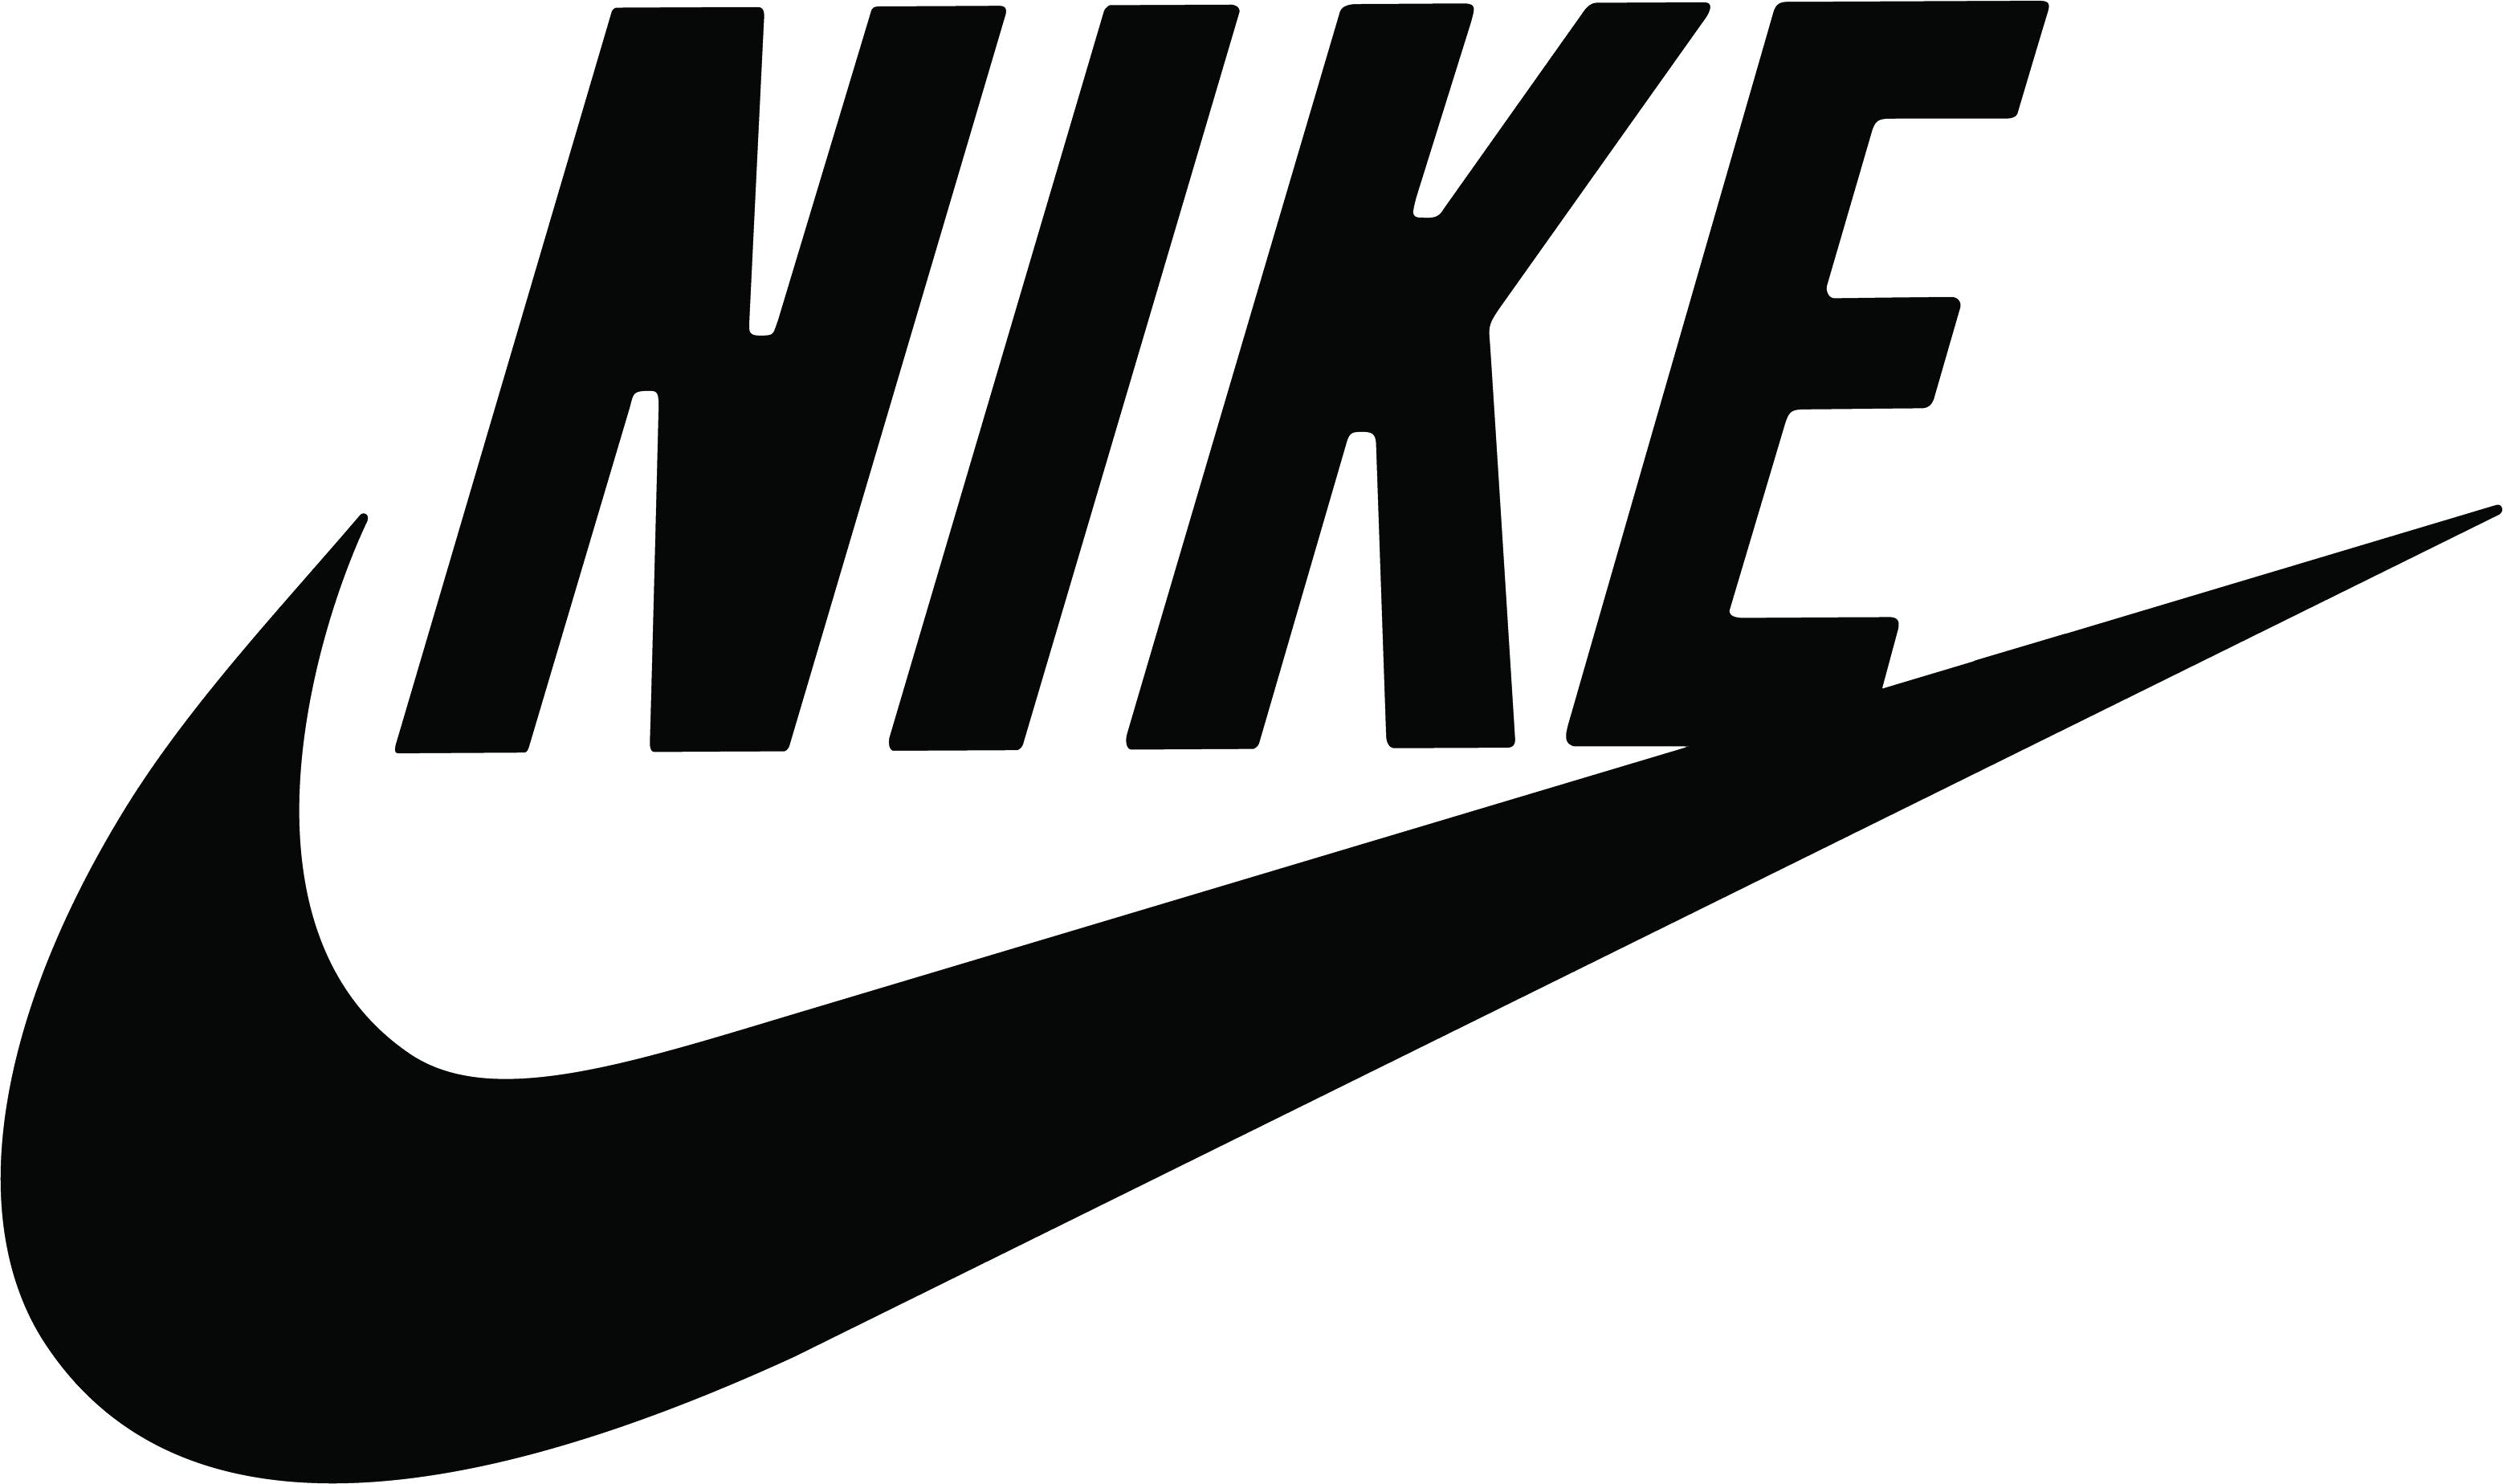 Free Nike Logo Png Transparen